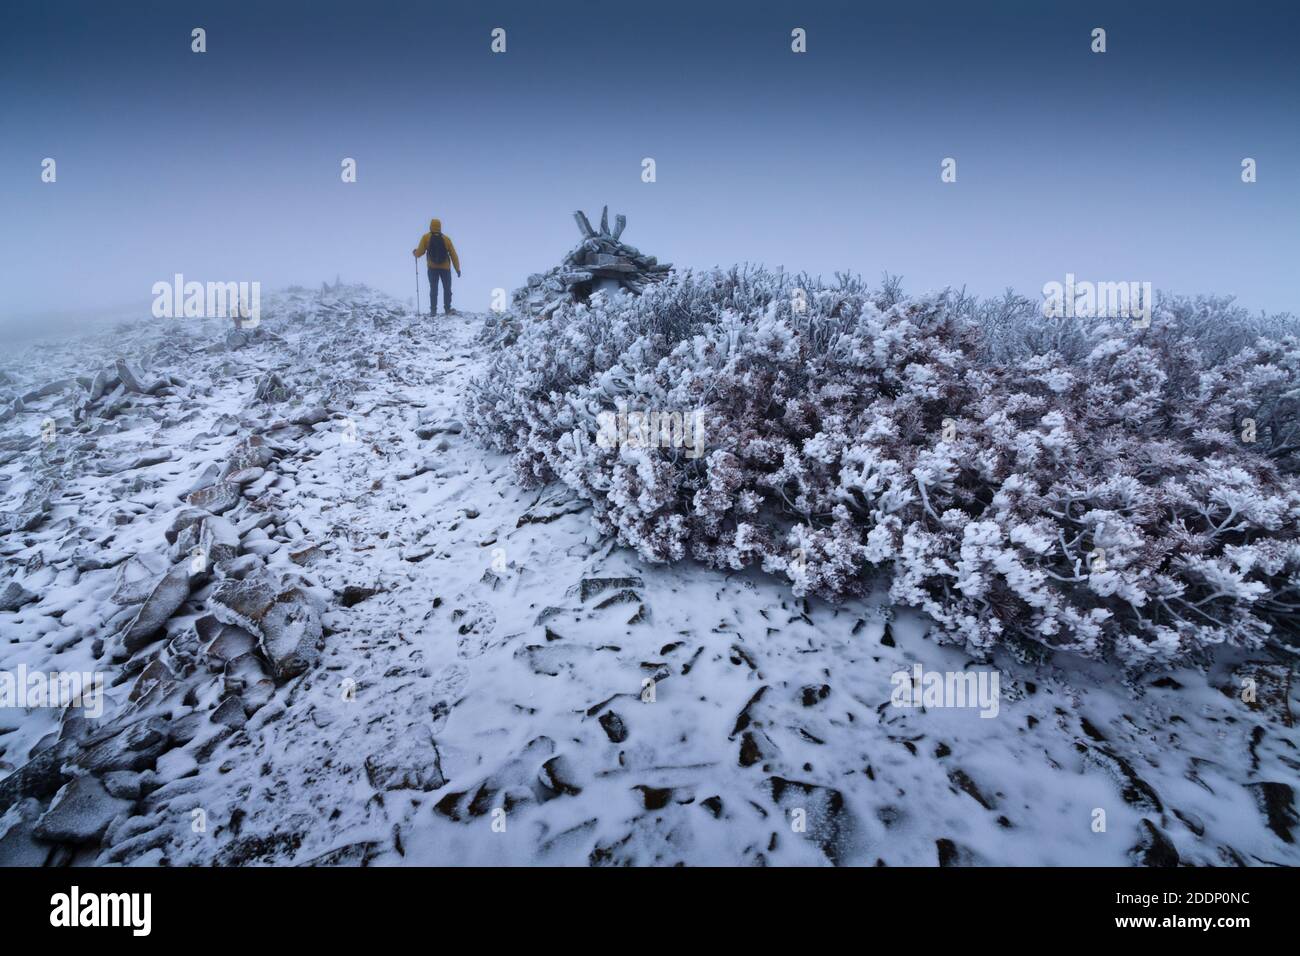 Un solitario vagabundo en un paisaje nevado. Soledad, montañas, invierno, niebla, nieve. Foto de stock